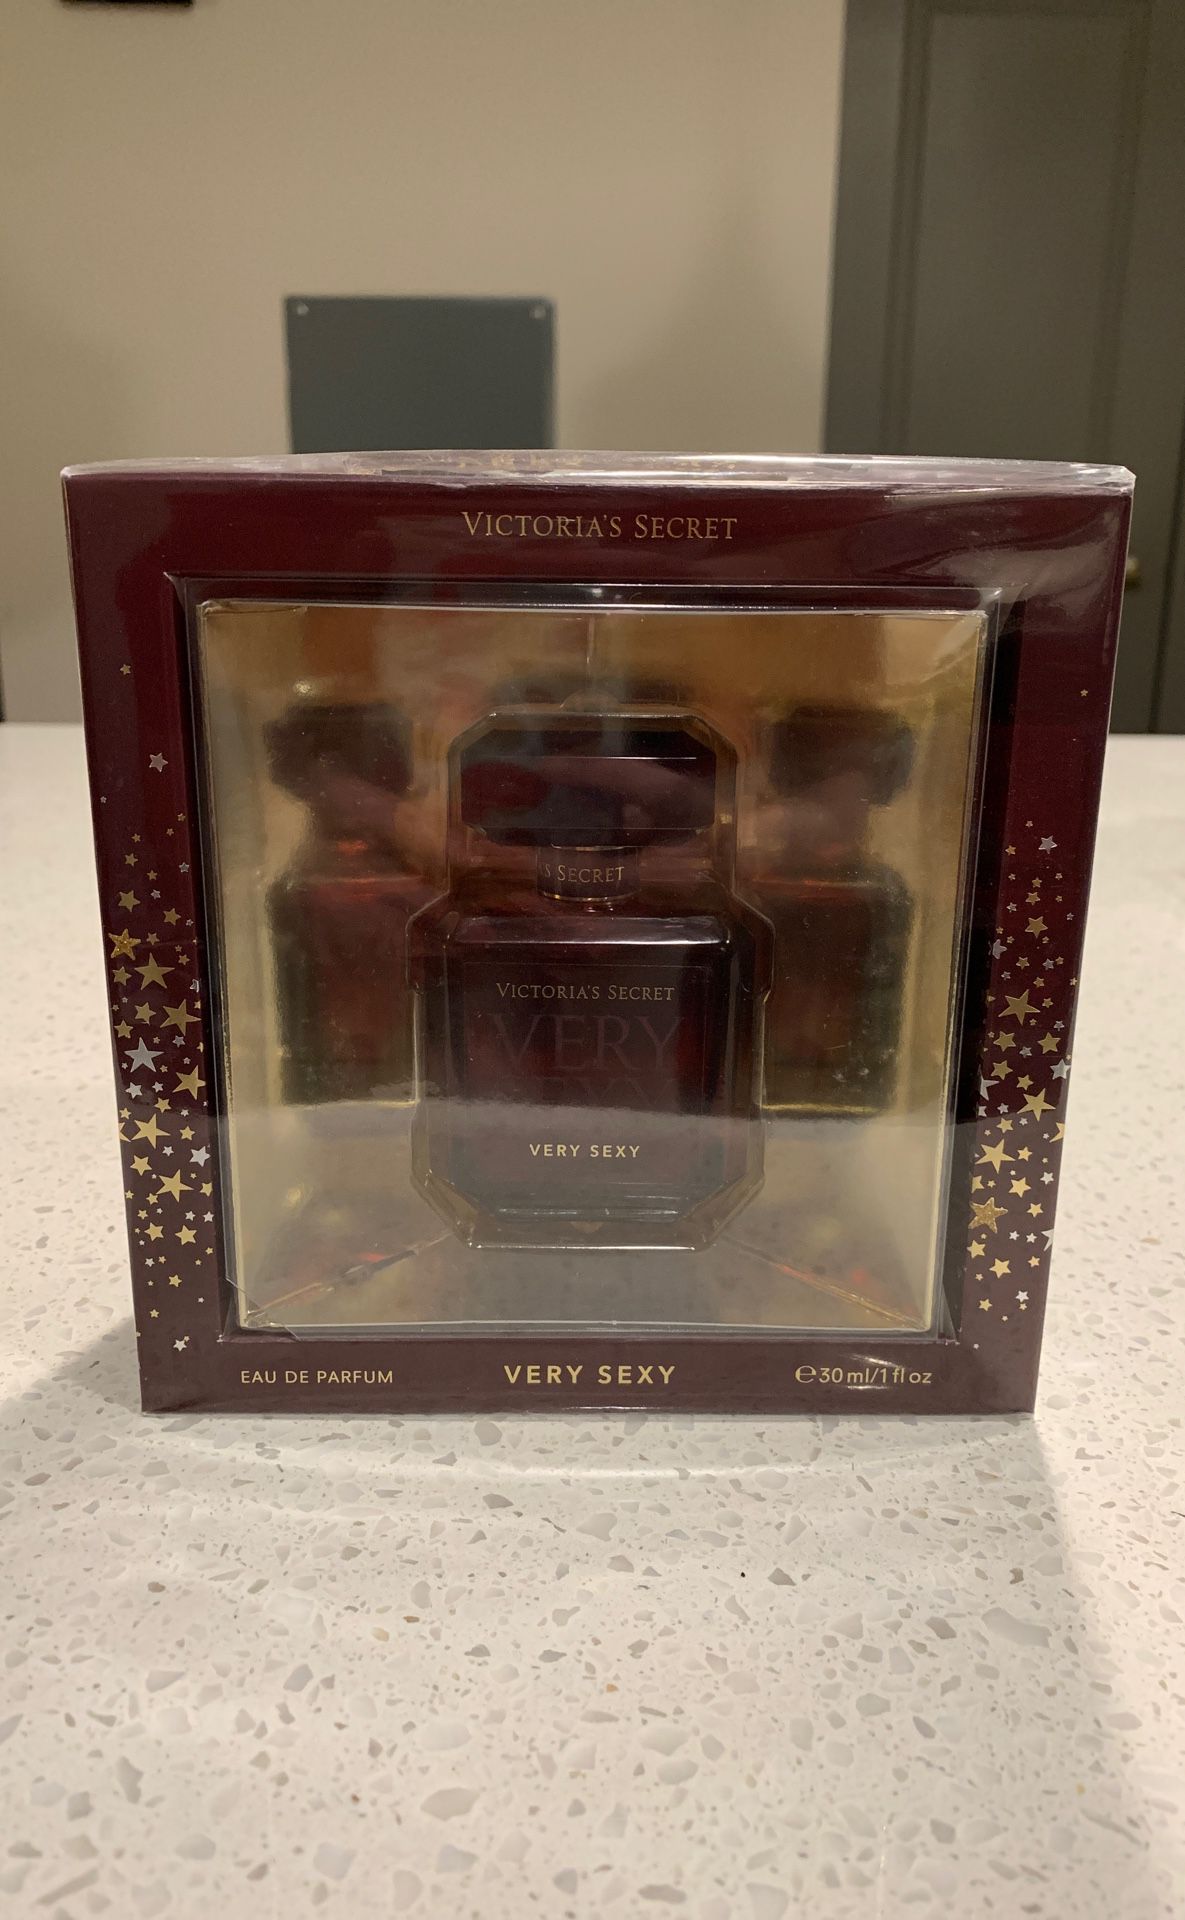 Victoria’s Secret Perfume - Very Sexy